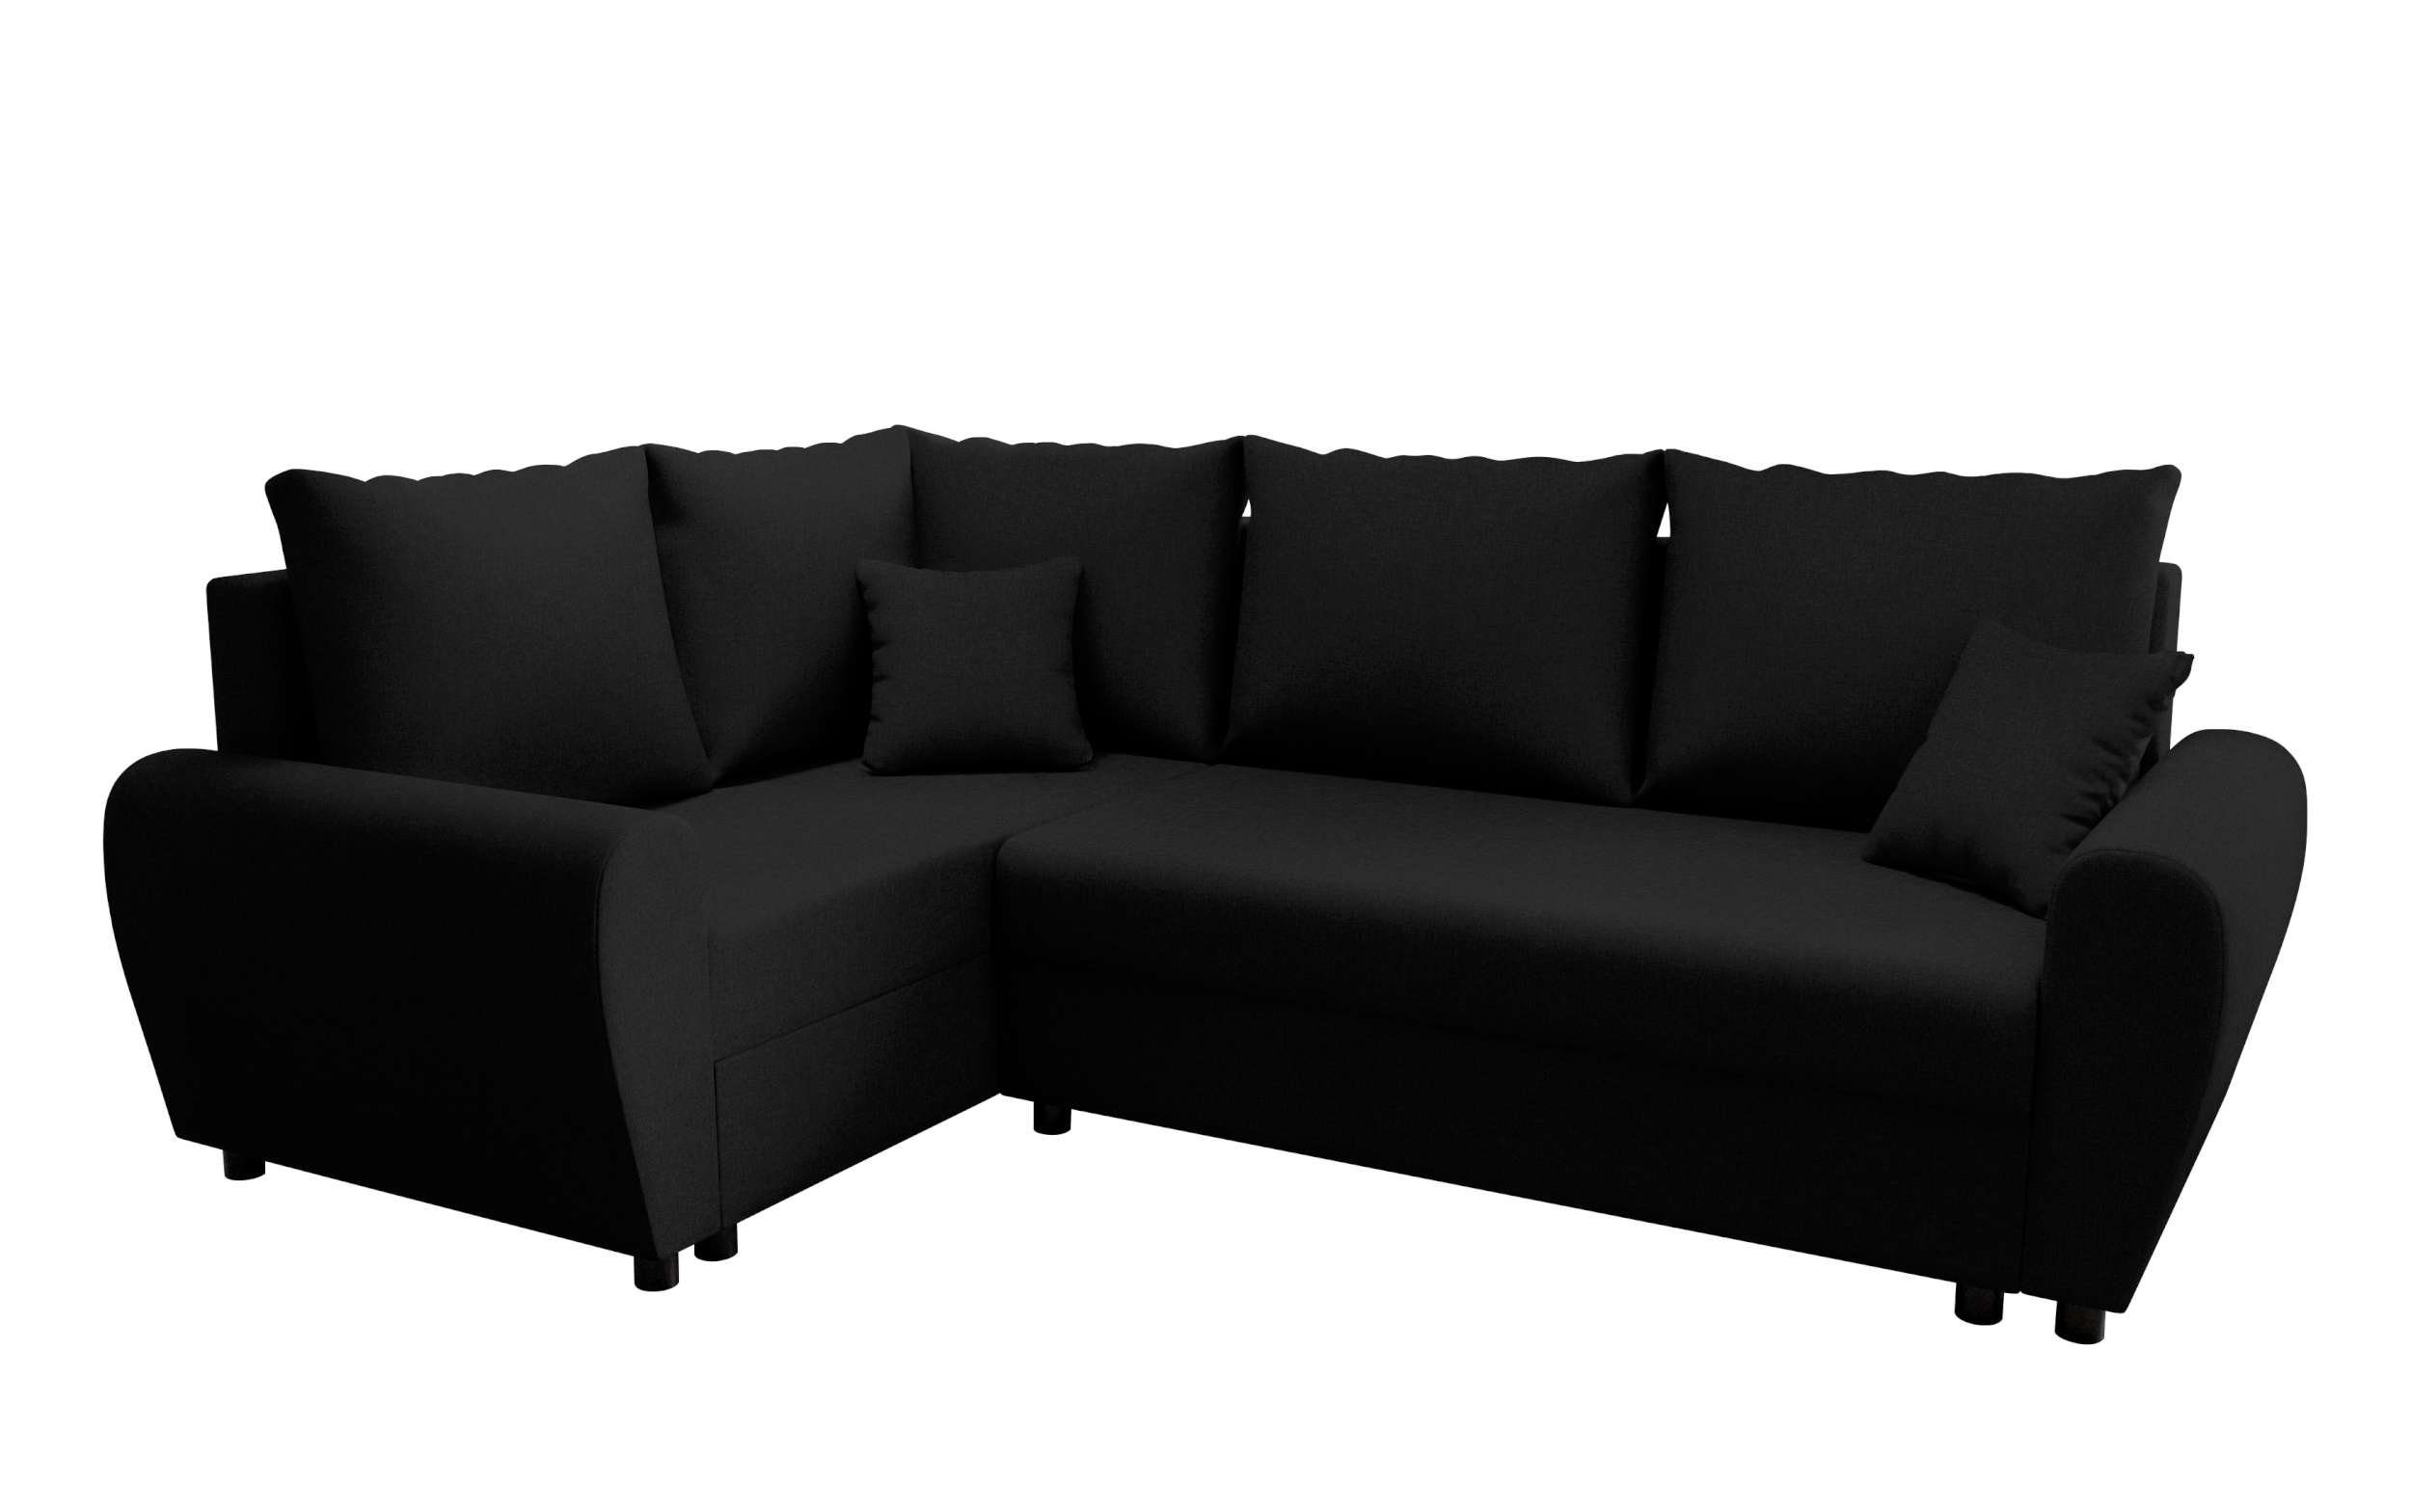 Bettkasten, Ecksofa Bettfunktion, Design Eckcouch, Valence, L-Form, mit mit Sitzkomfort, Sofa, Stylefy Modern